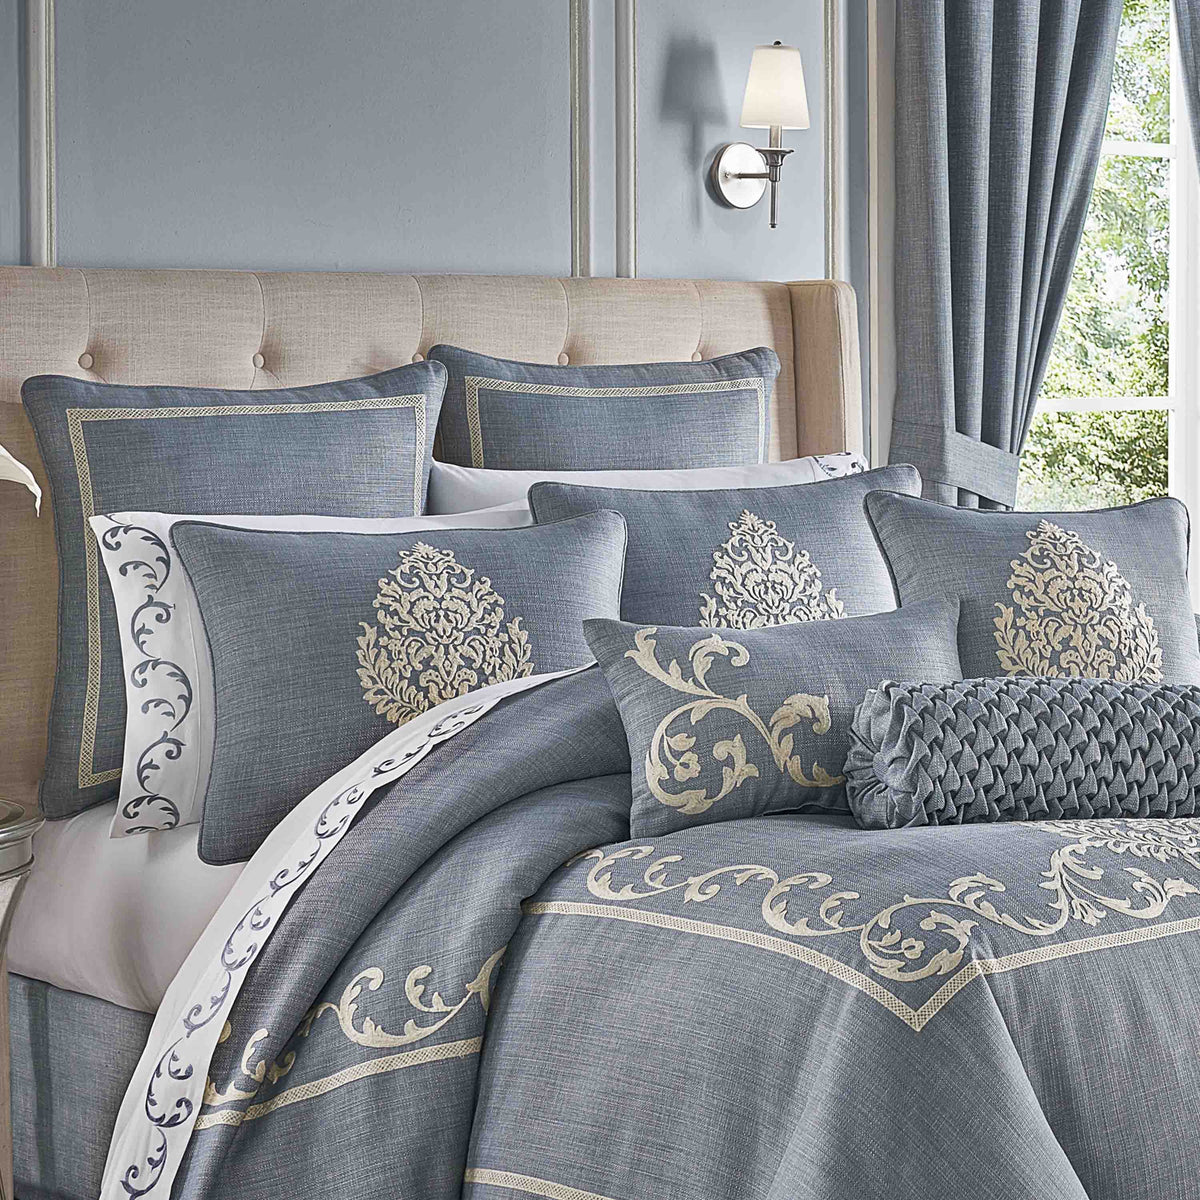 Pink And Grey Comforter Set King - Bedding Sets Features | Bocorawasutu